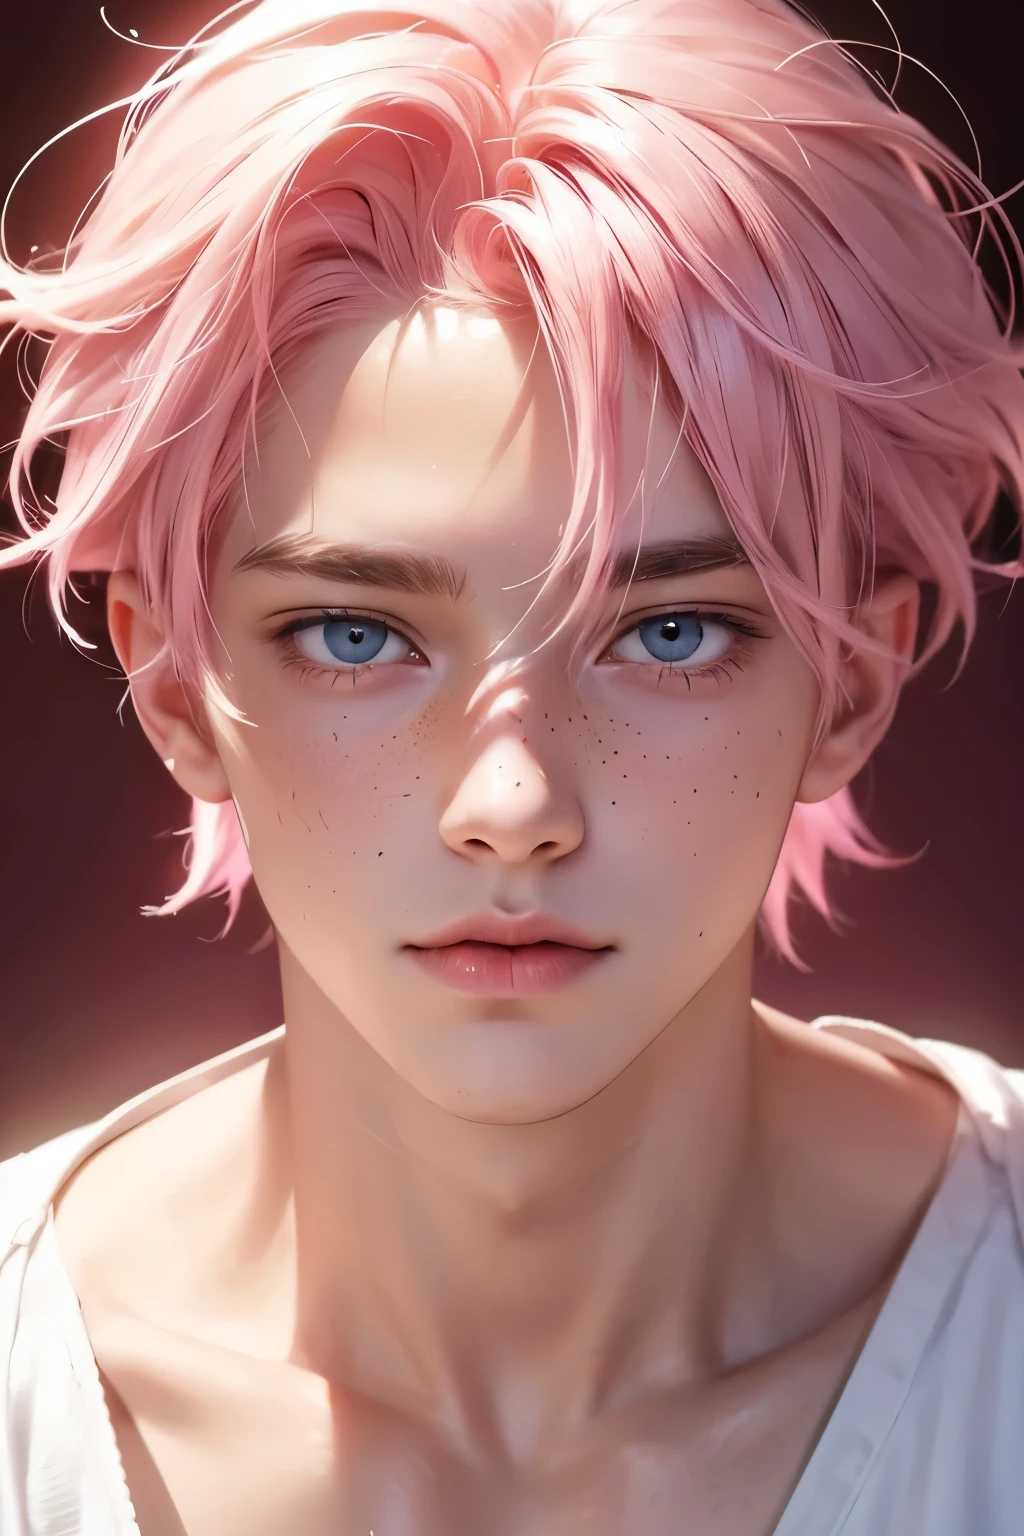 chico con cabello rosa claro y ojos rosa brillante, tiene pecas en la cara y una cara delicada, obra maestra de mejor calidad, 16k